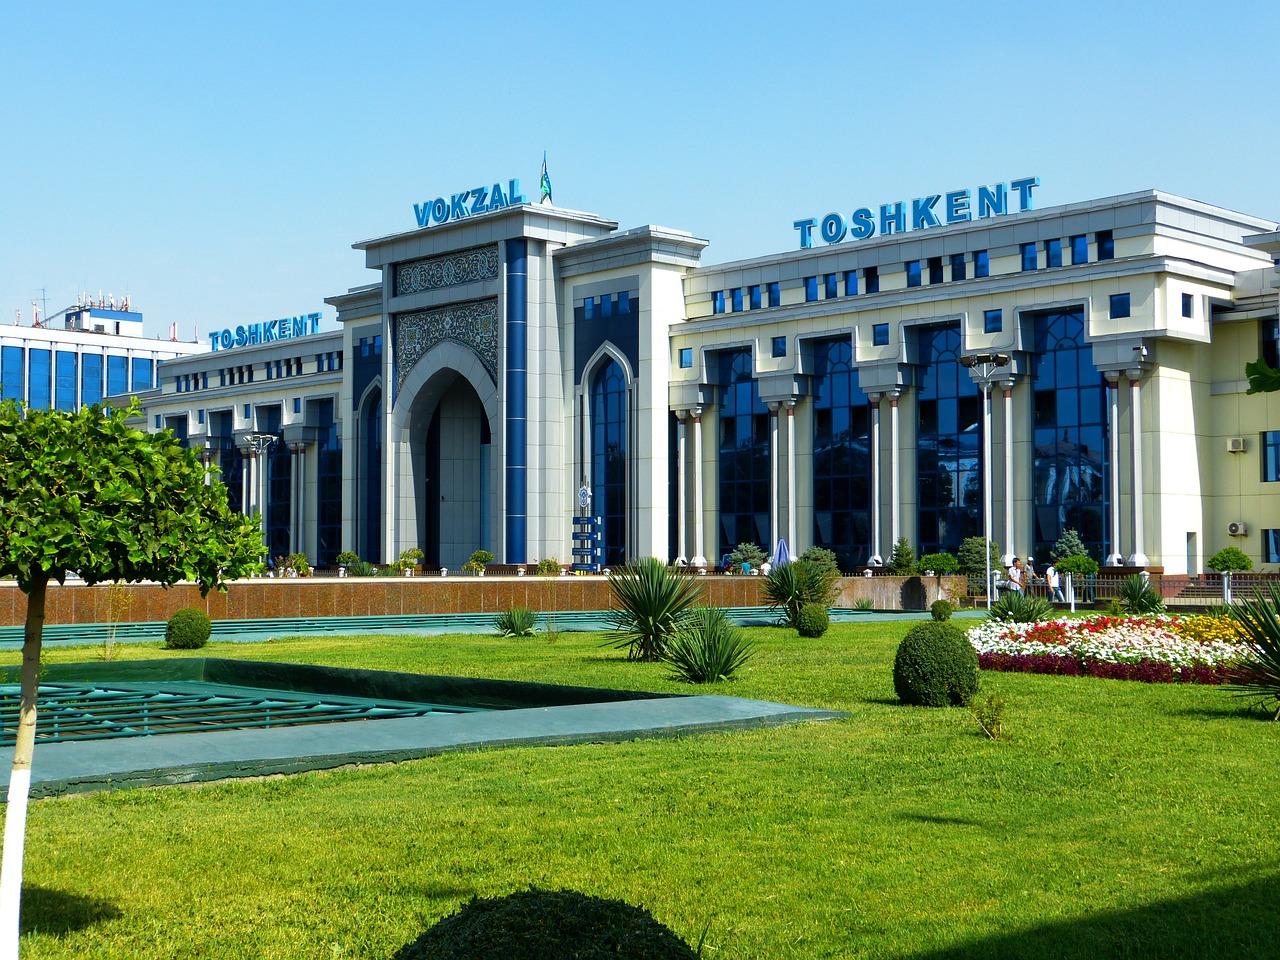 Tashkent Uzbekistan Adventure 3 days